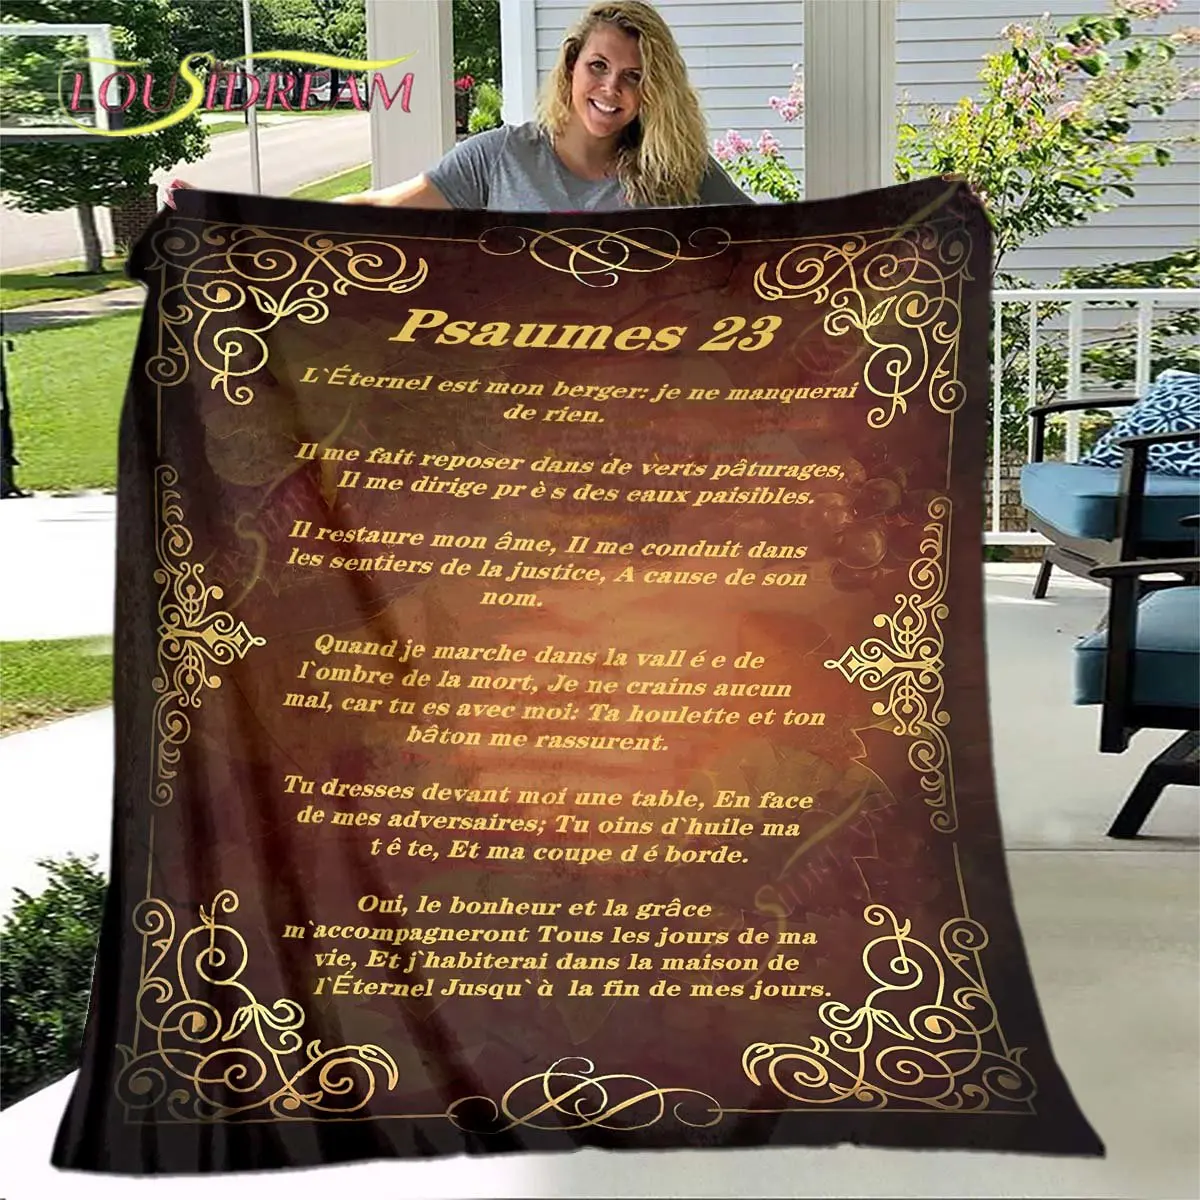 

Christ Psalm 23 Blanket Christian Religious Faith Blanket Gifts for Women Men Throw Blanket Home Decor for Bed Couch Living Room